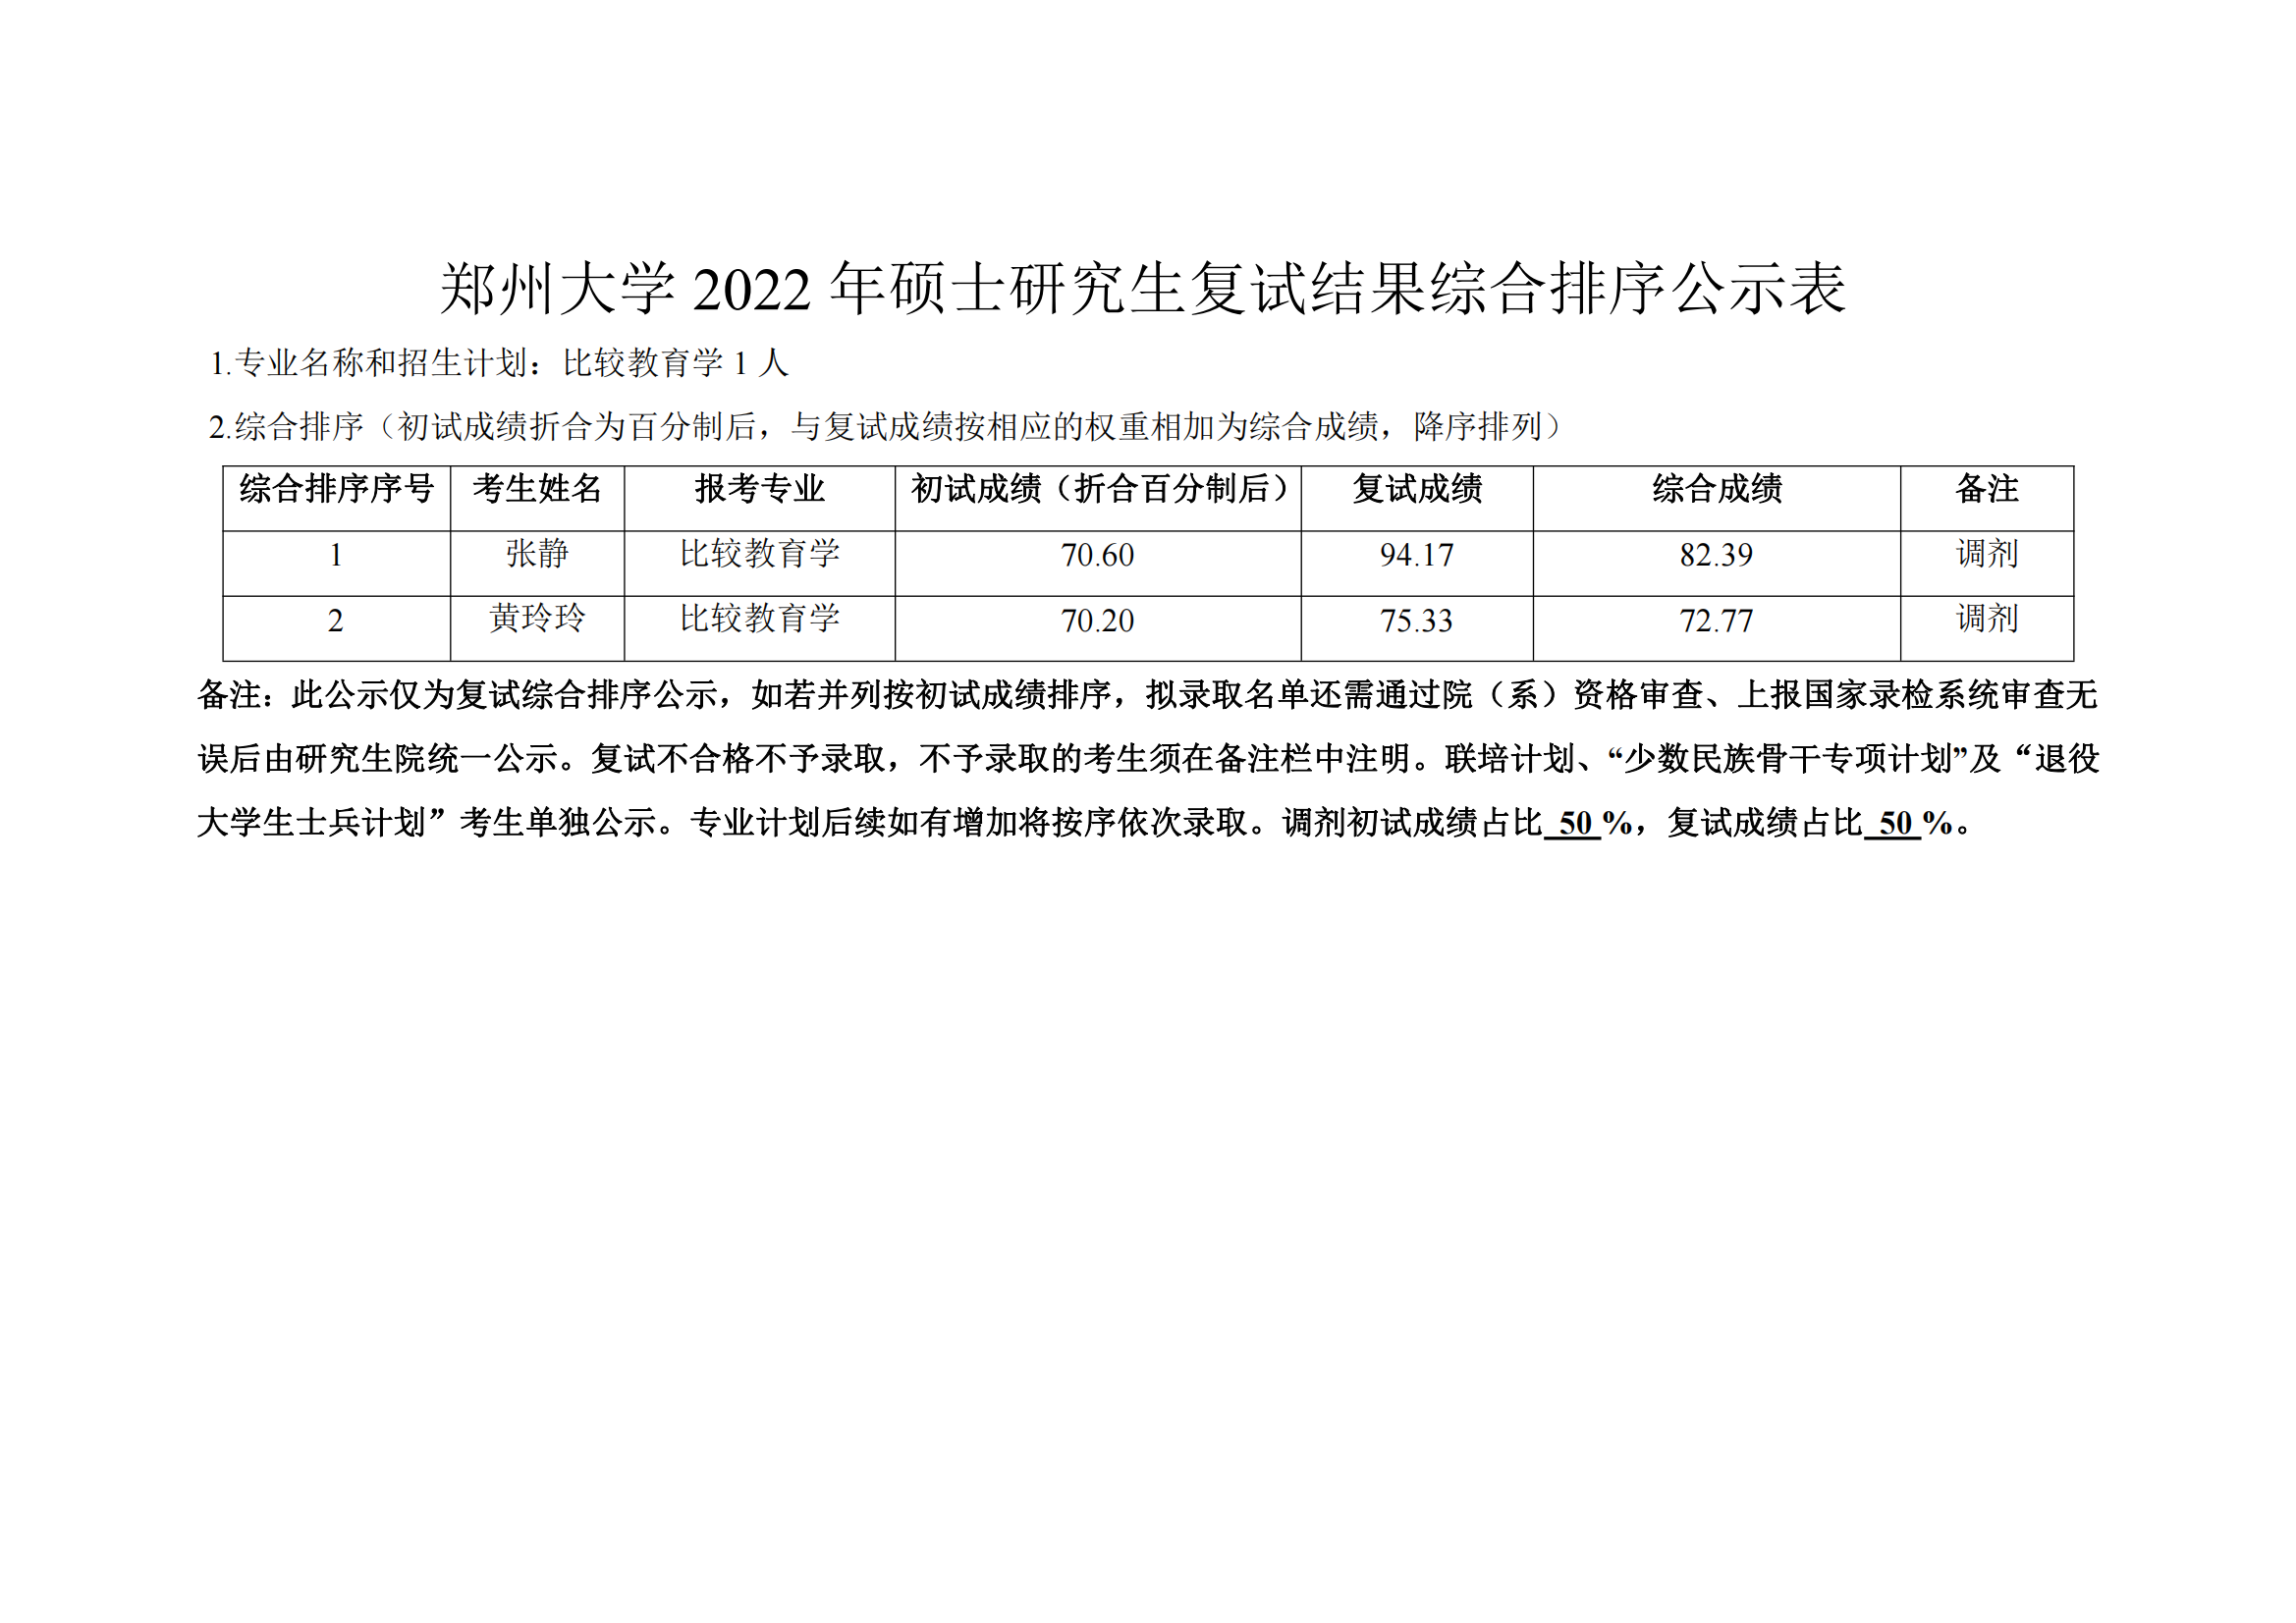 郑州大学教育学院2022年硕士研究生复试结果综合排序公示表 第三批_01.png